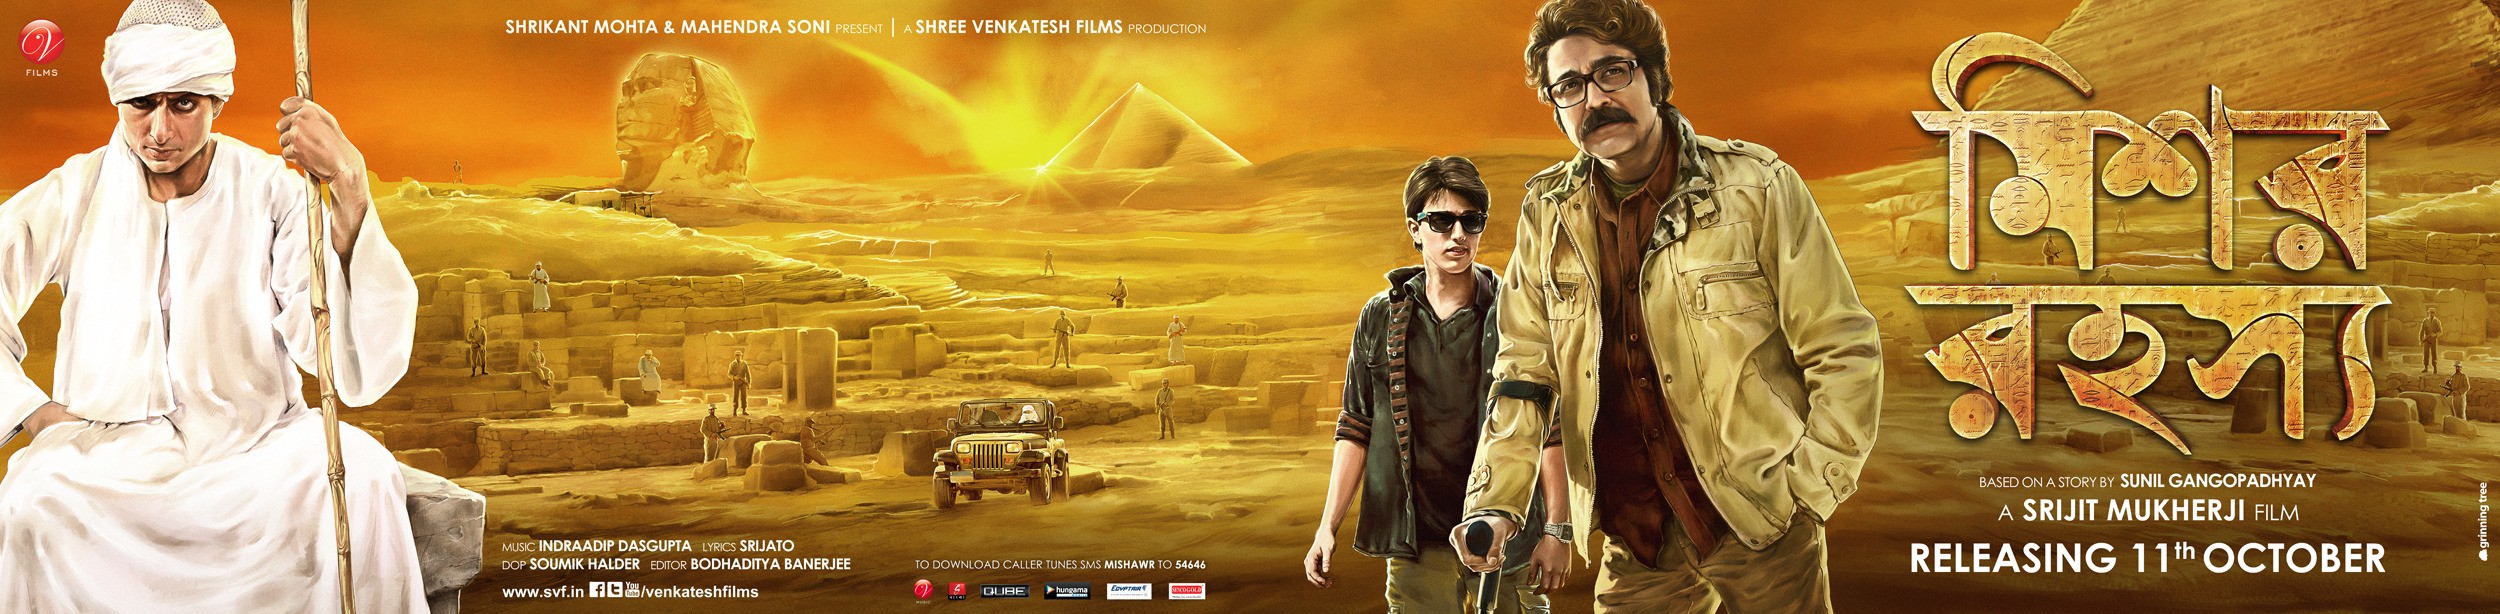 Mega Sized Movie Poster Image for Mishawr Rawhoshyo (#6 of 6)